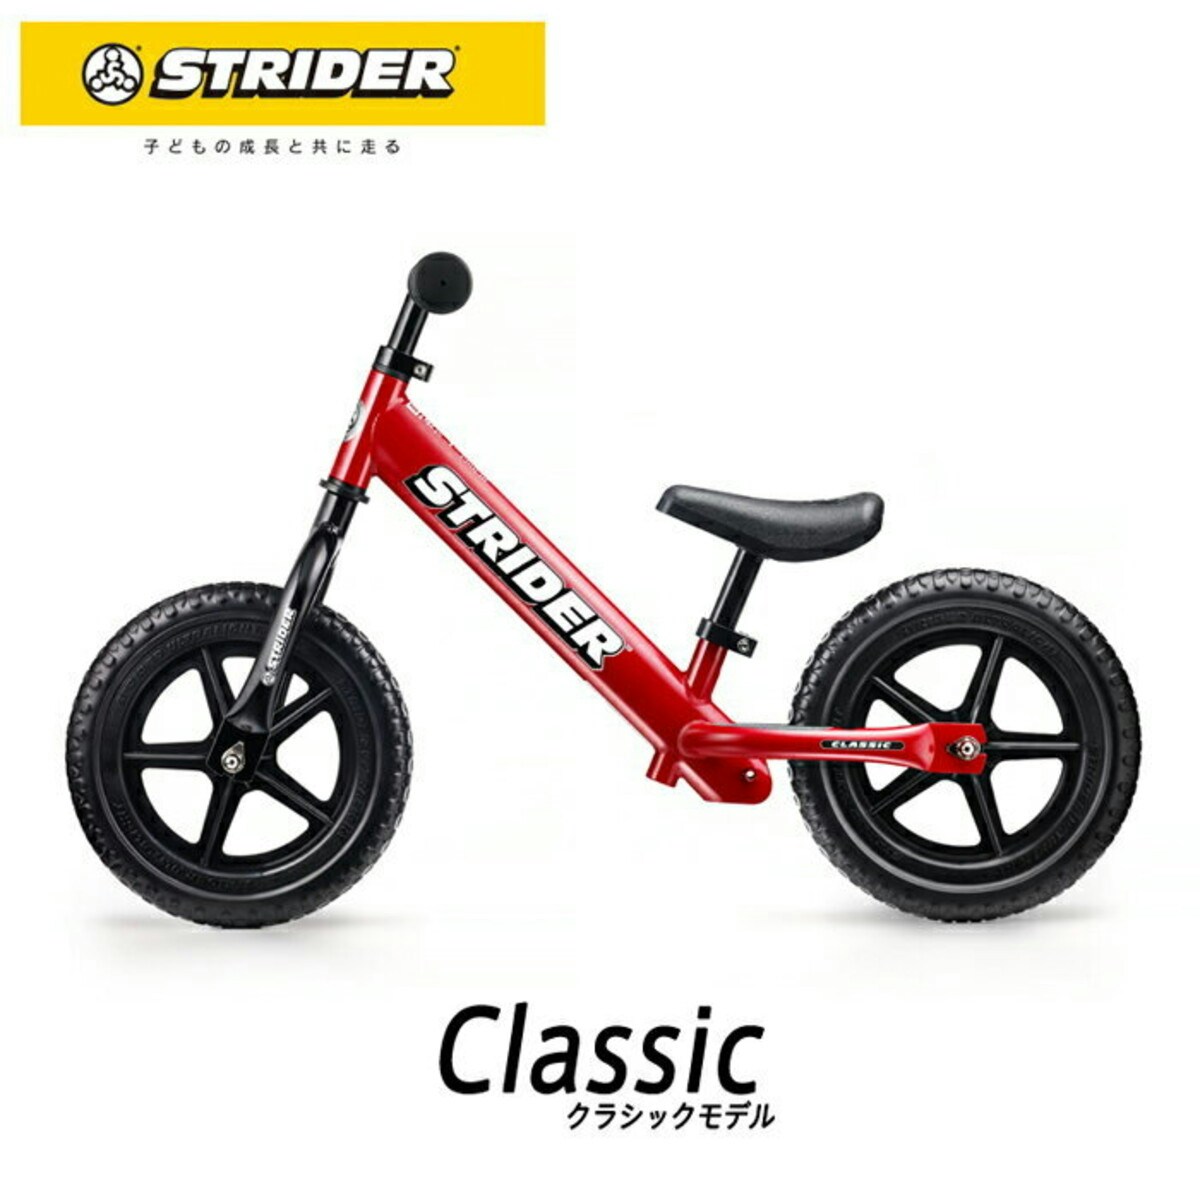 「STRIDER(ストライダー)スポーツモデル」